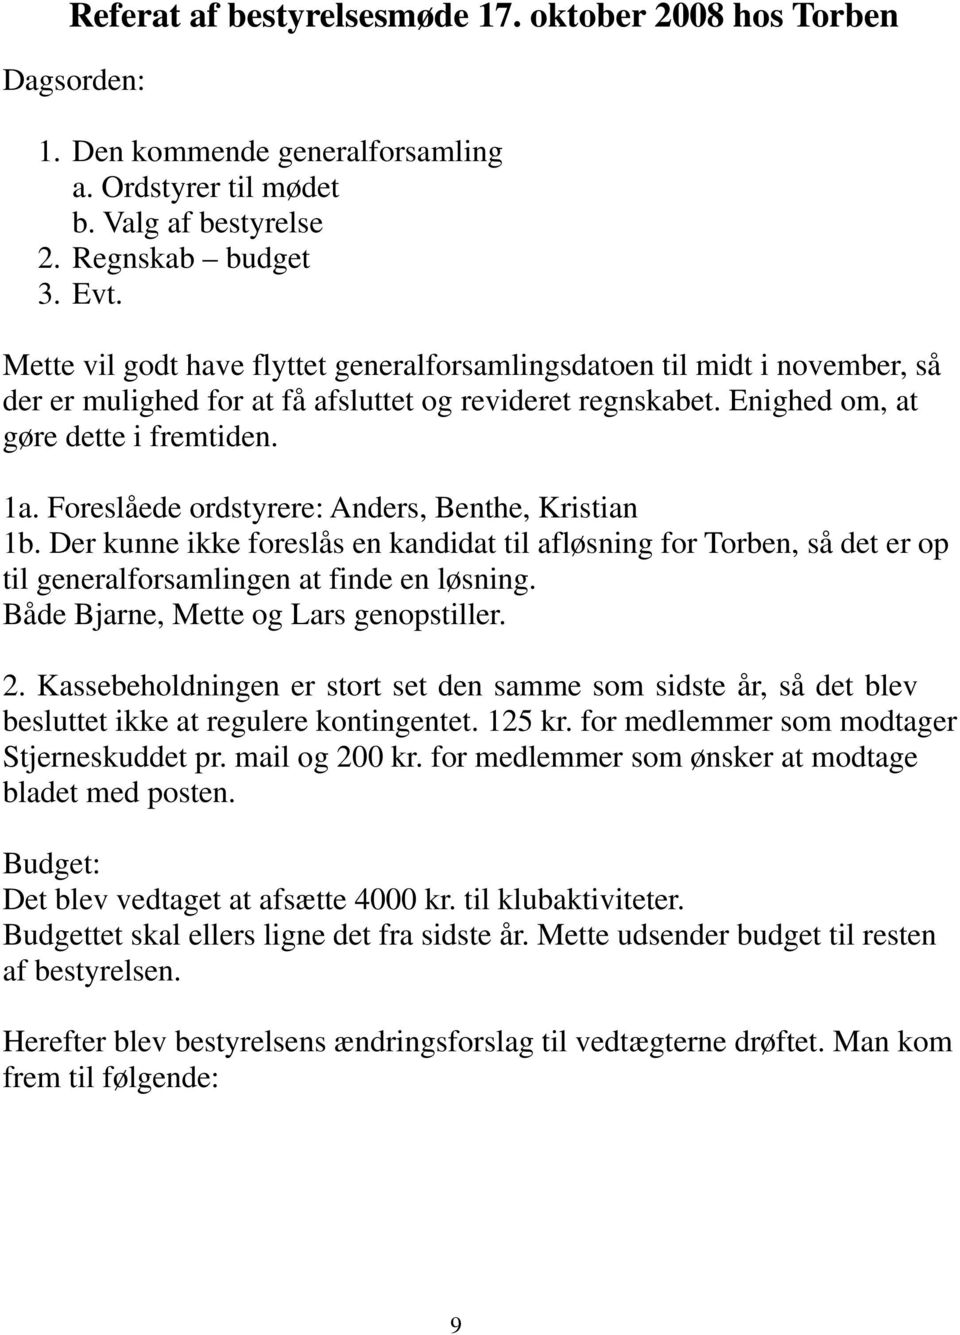 Foreslåede ordstyrere: Anders, Benthe, Kristian 1b. Der kunne ikke foreslås en kandidat til afløsning for Torben, så det er op til generalforsamlingen at finde en løsning.